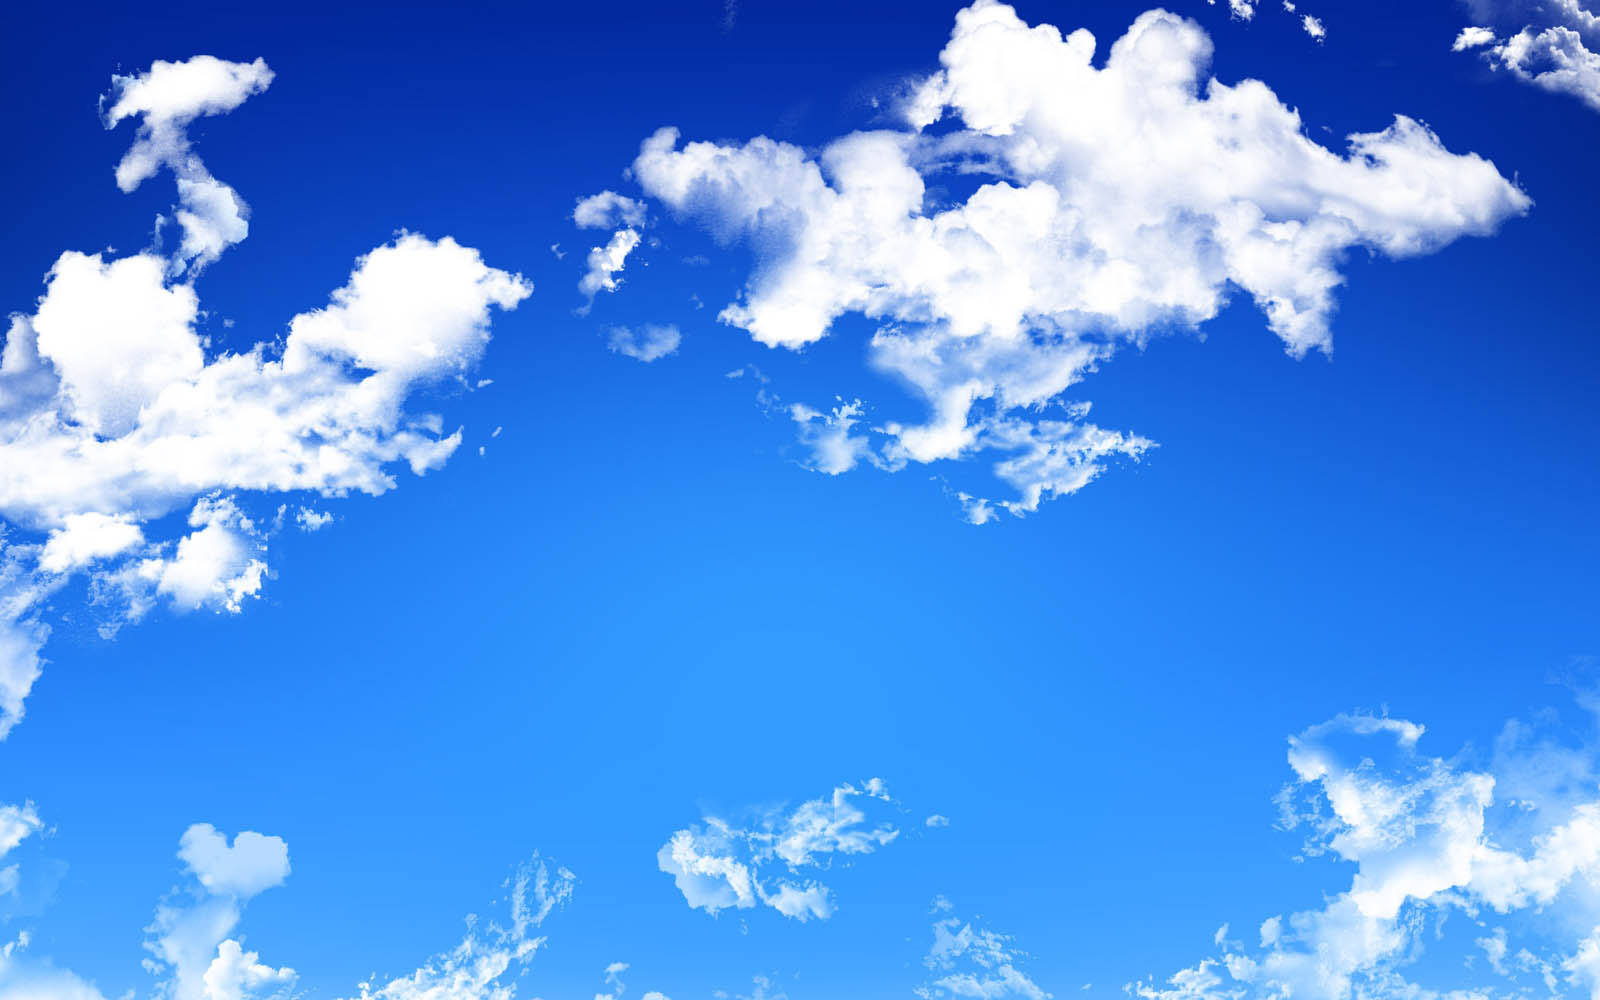 Một màn hình nền máy tính trời xanh mang đến sự mới mẻ và sáng tạo cho không gian làm việc của bạn. Các mây trôi qua và đám mây đầy sự cảm xúc sẽ giúp bạn giảm căng thẳng trong khi làm việc và tạo ra một không gian tĩnh lặng để trầm tư suy nghĩ.